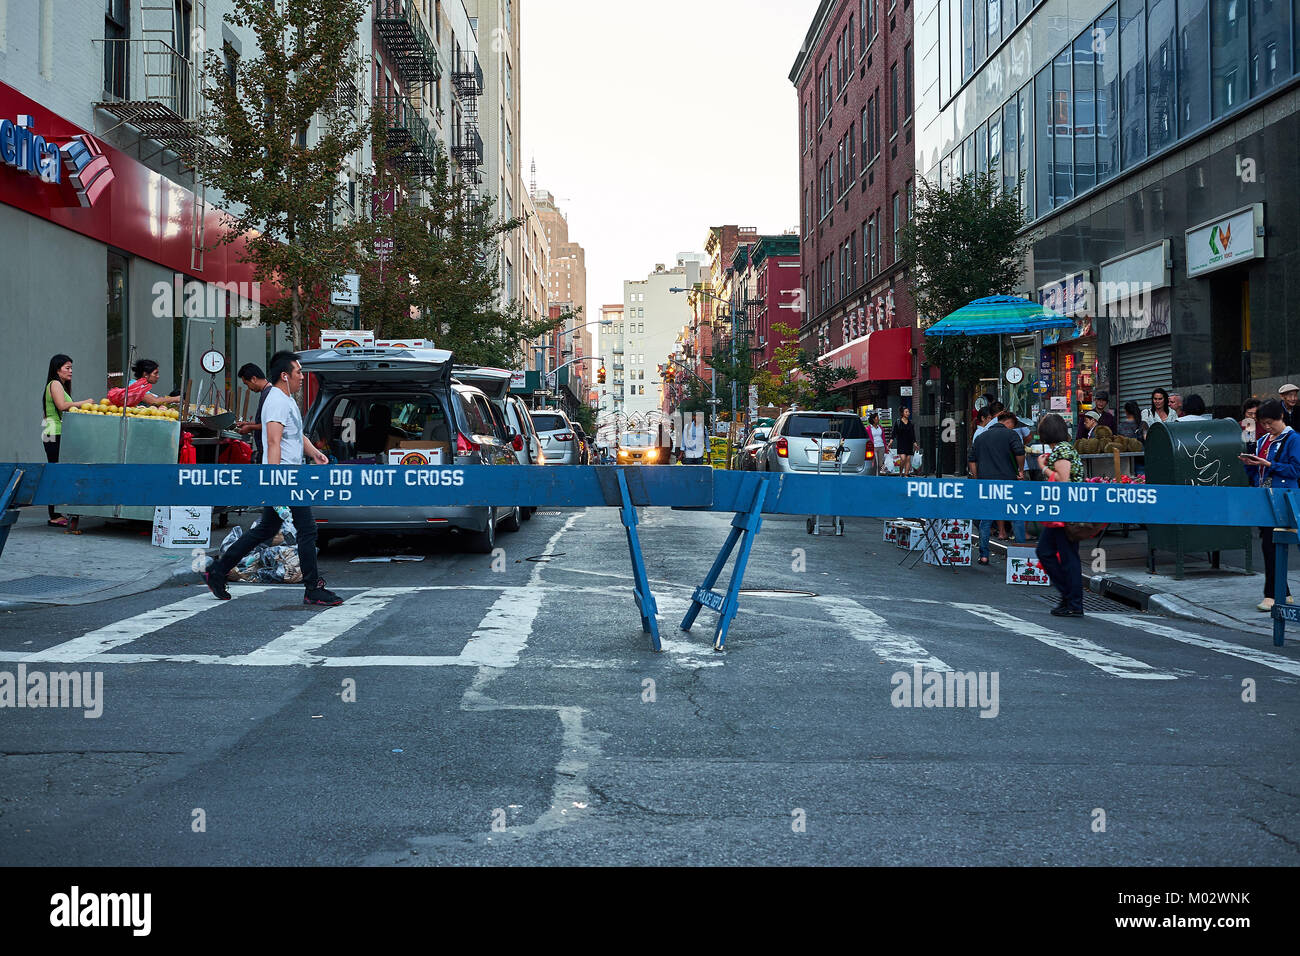 NEW YORK - 24 septembre 2016 : Police line à l'Hester street et Bowery Street cross, avec des gens de traverser la rue Banque D'Images